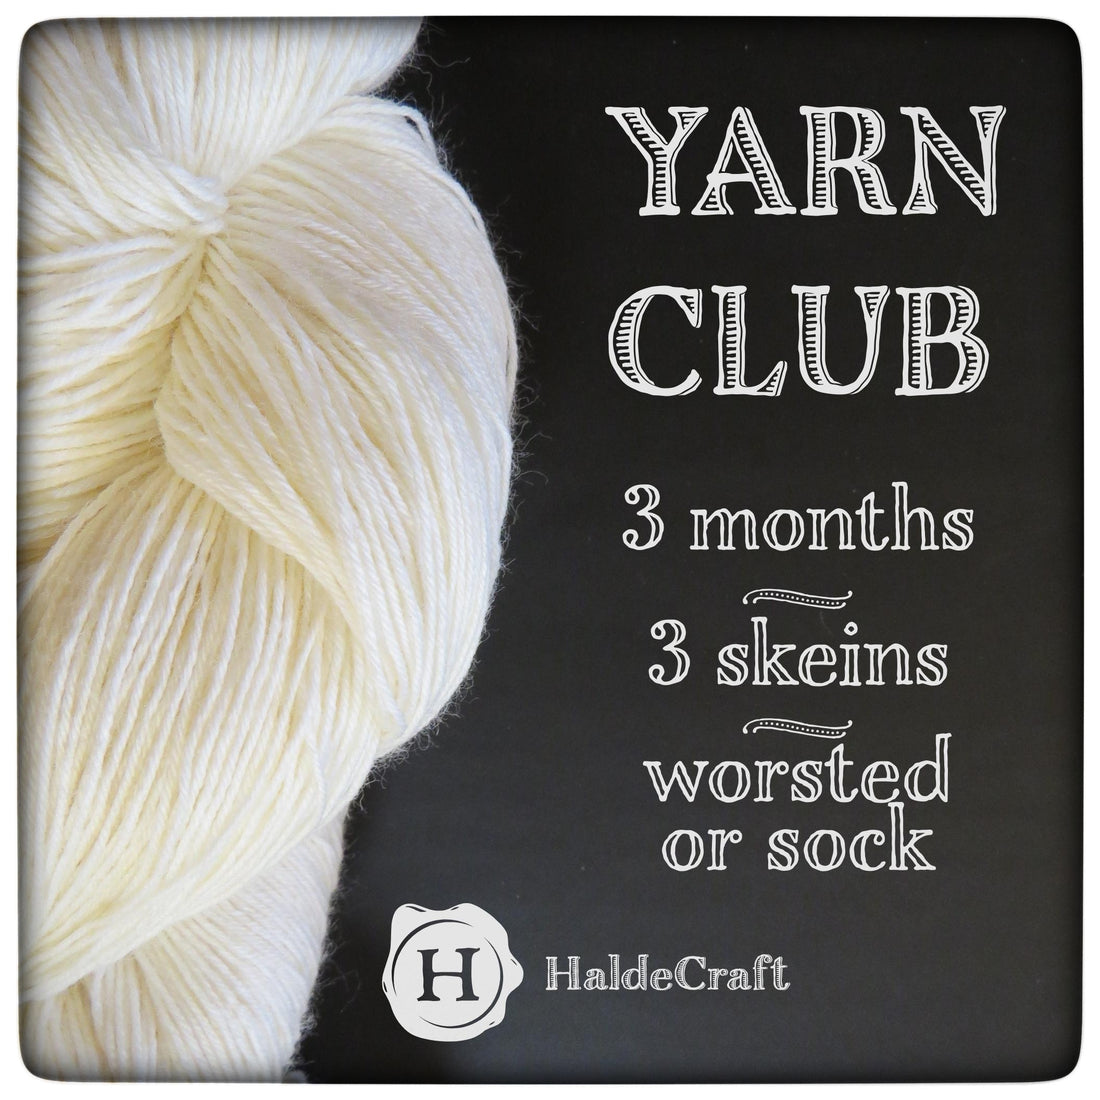 January - March 2018 Yarn Club